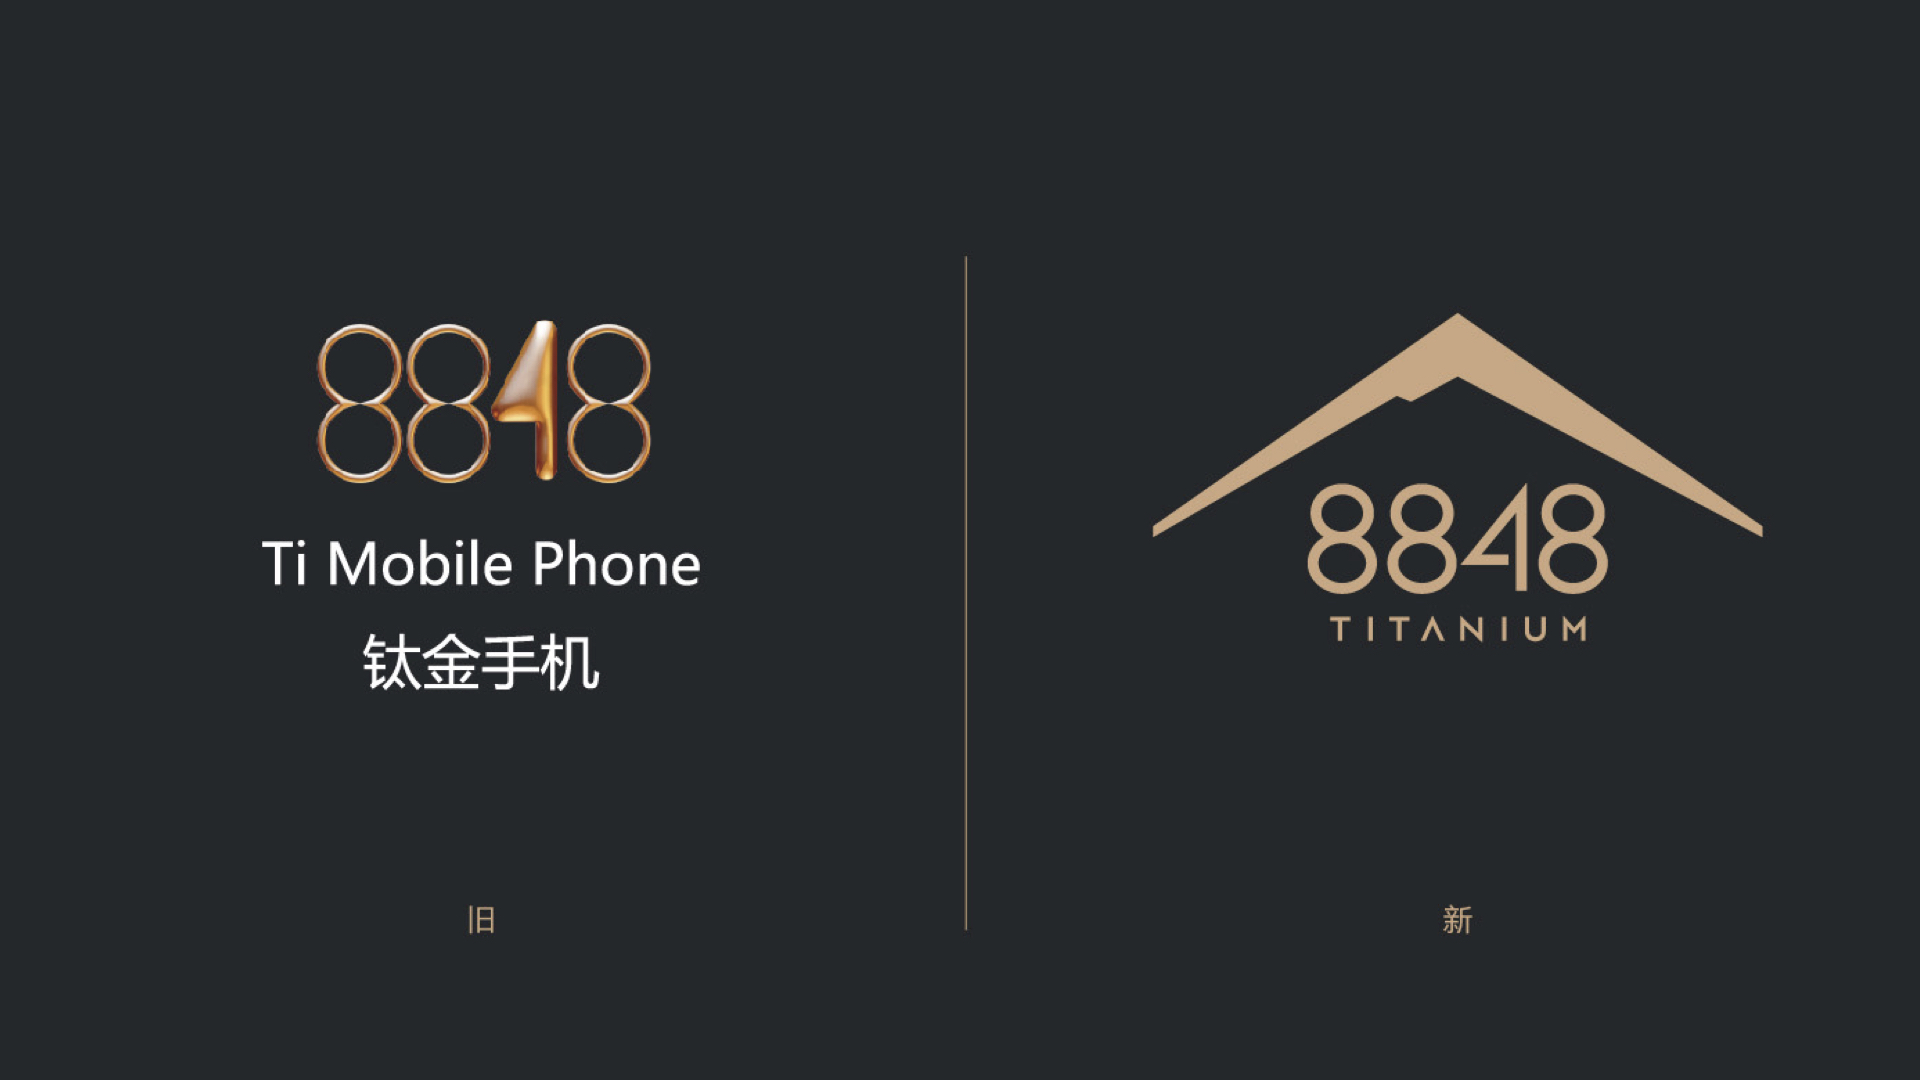 8848钛金手机品牌设计:向成功致敬,不断创造巅峰